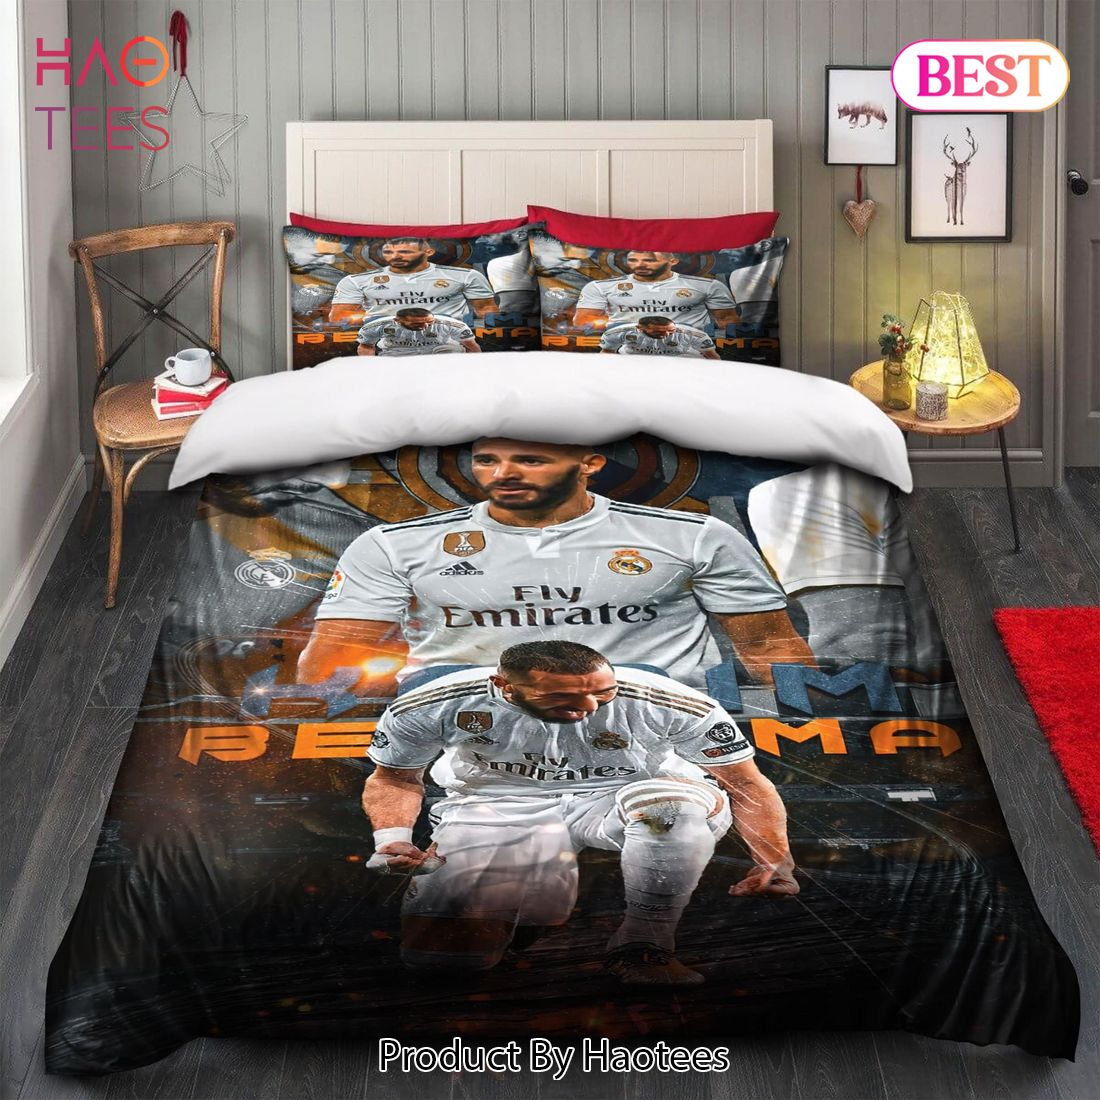 Buy Benzema Legend Real Madrid Laliga 20 Bedding Sets Bed Sets, Bedroom Sets, Comforter Sets, Duvet Cover, Bedspread